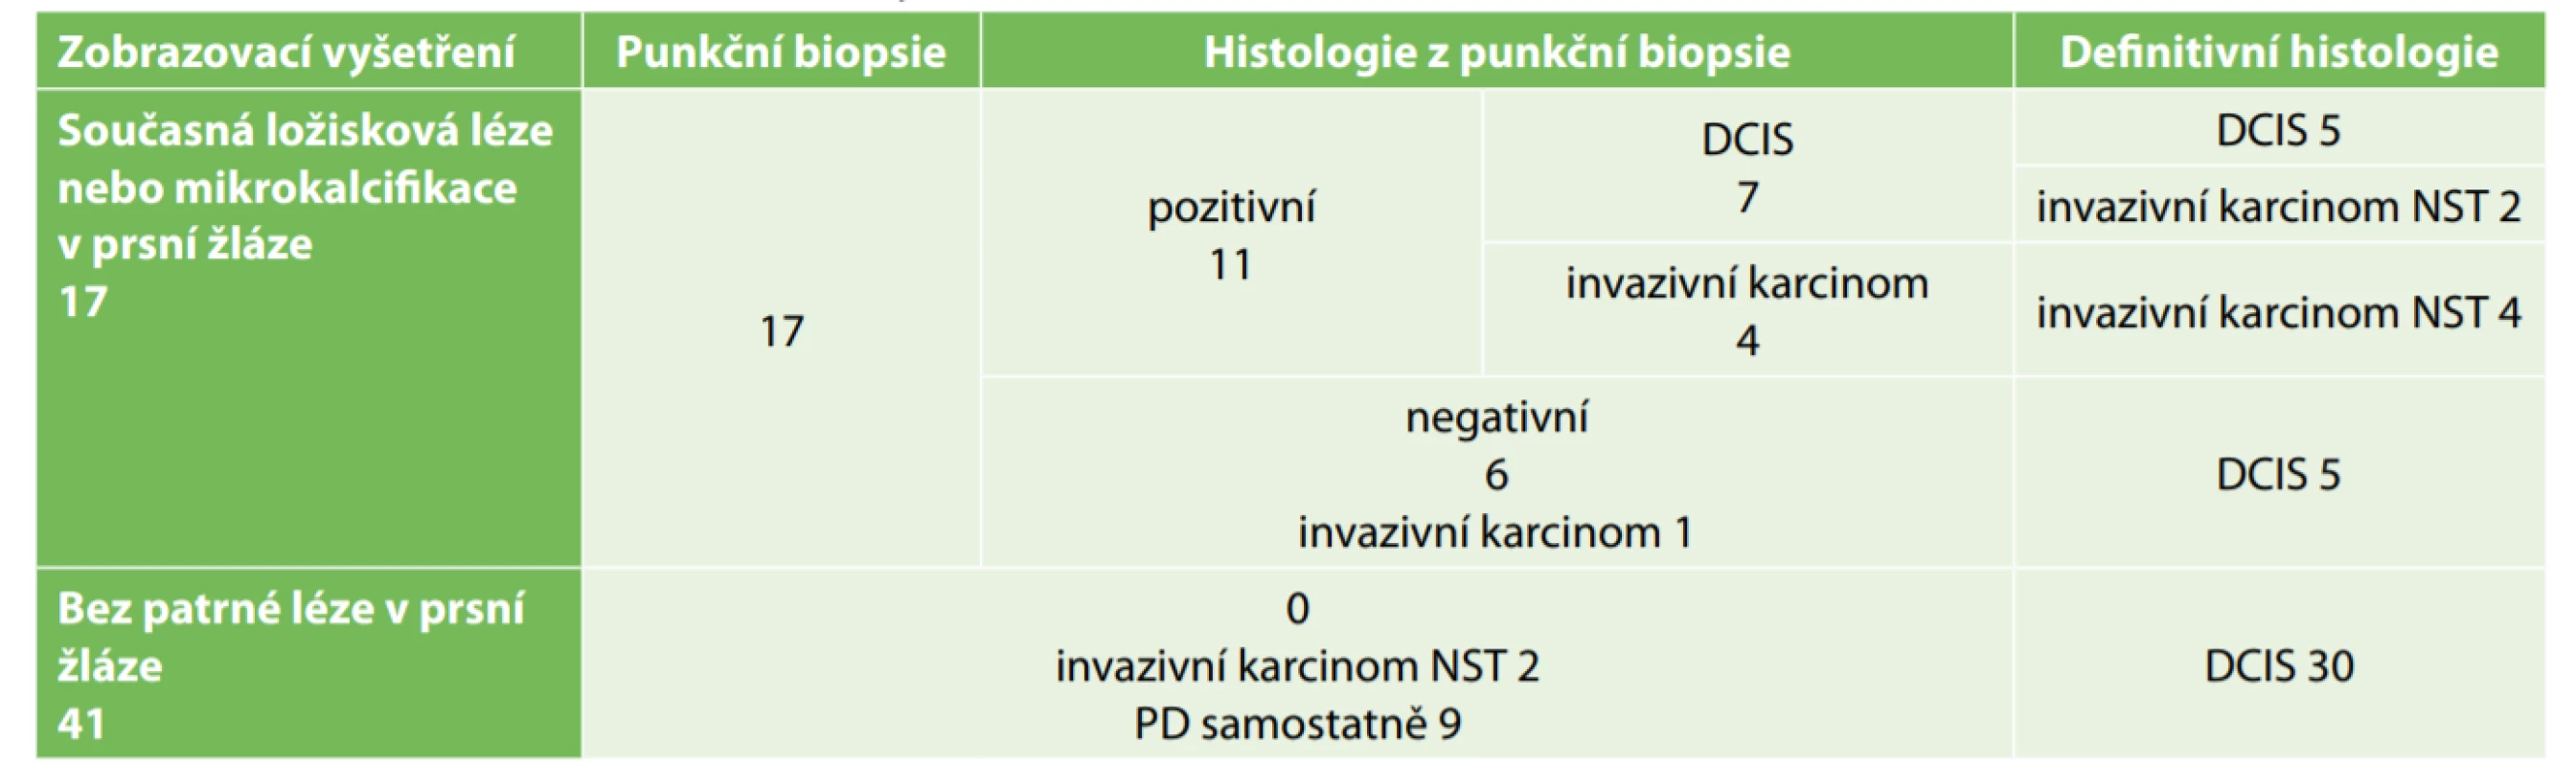 Výsledky vyšetřování prsní žlázy na přítomnost souběžné malignity při PD<br>
Tab. 1: Results of breast examination for synchronous DCIS or invasive carcinoma with PD 